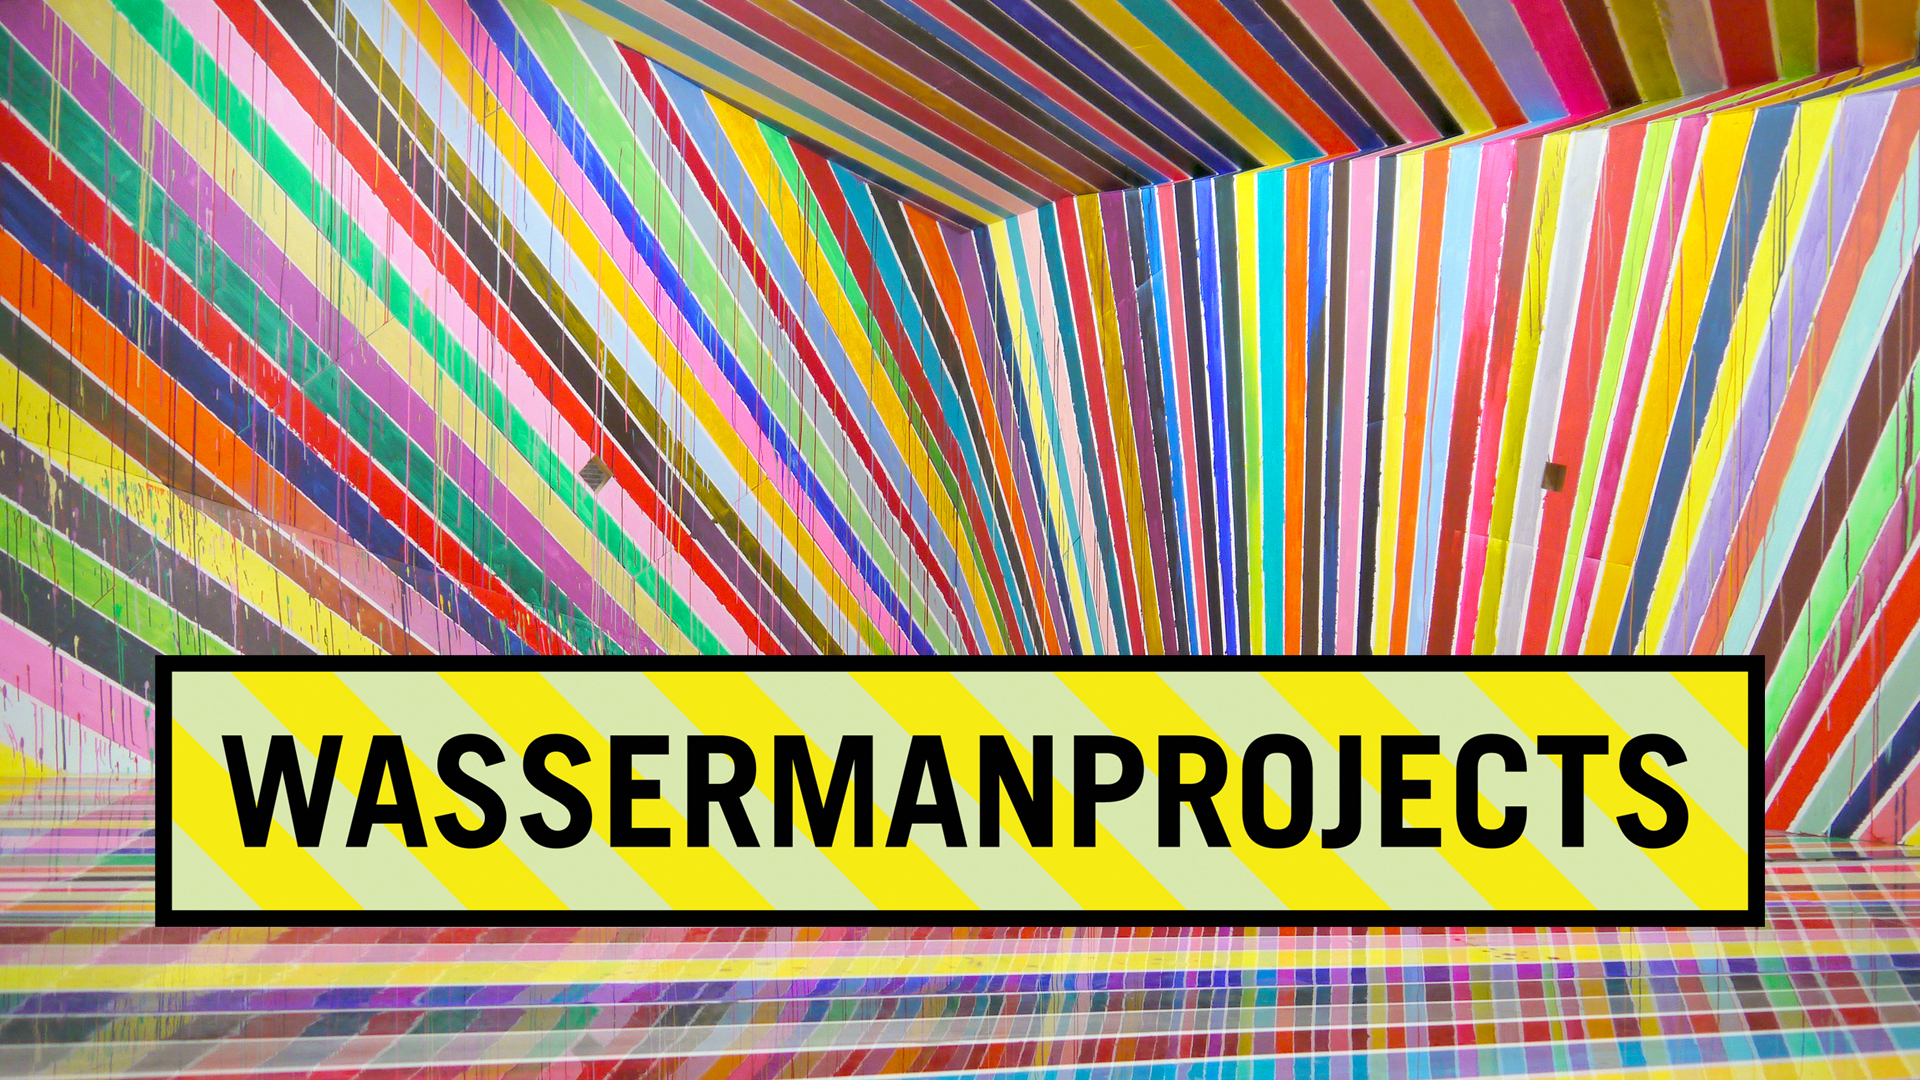 Wasserman Projects